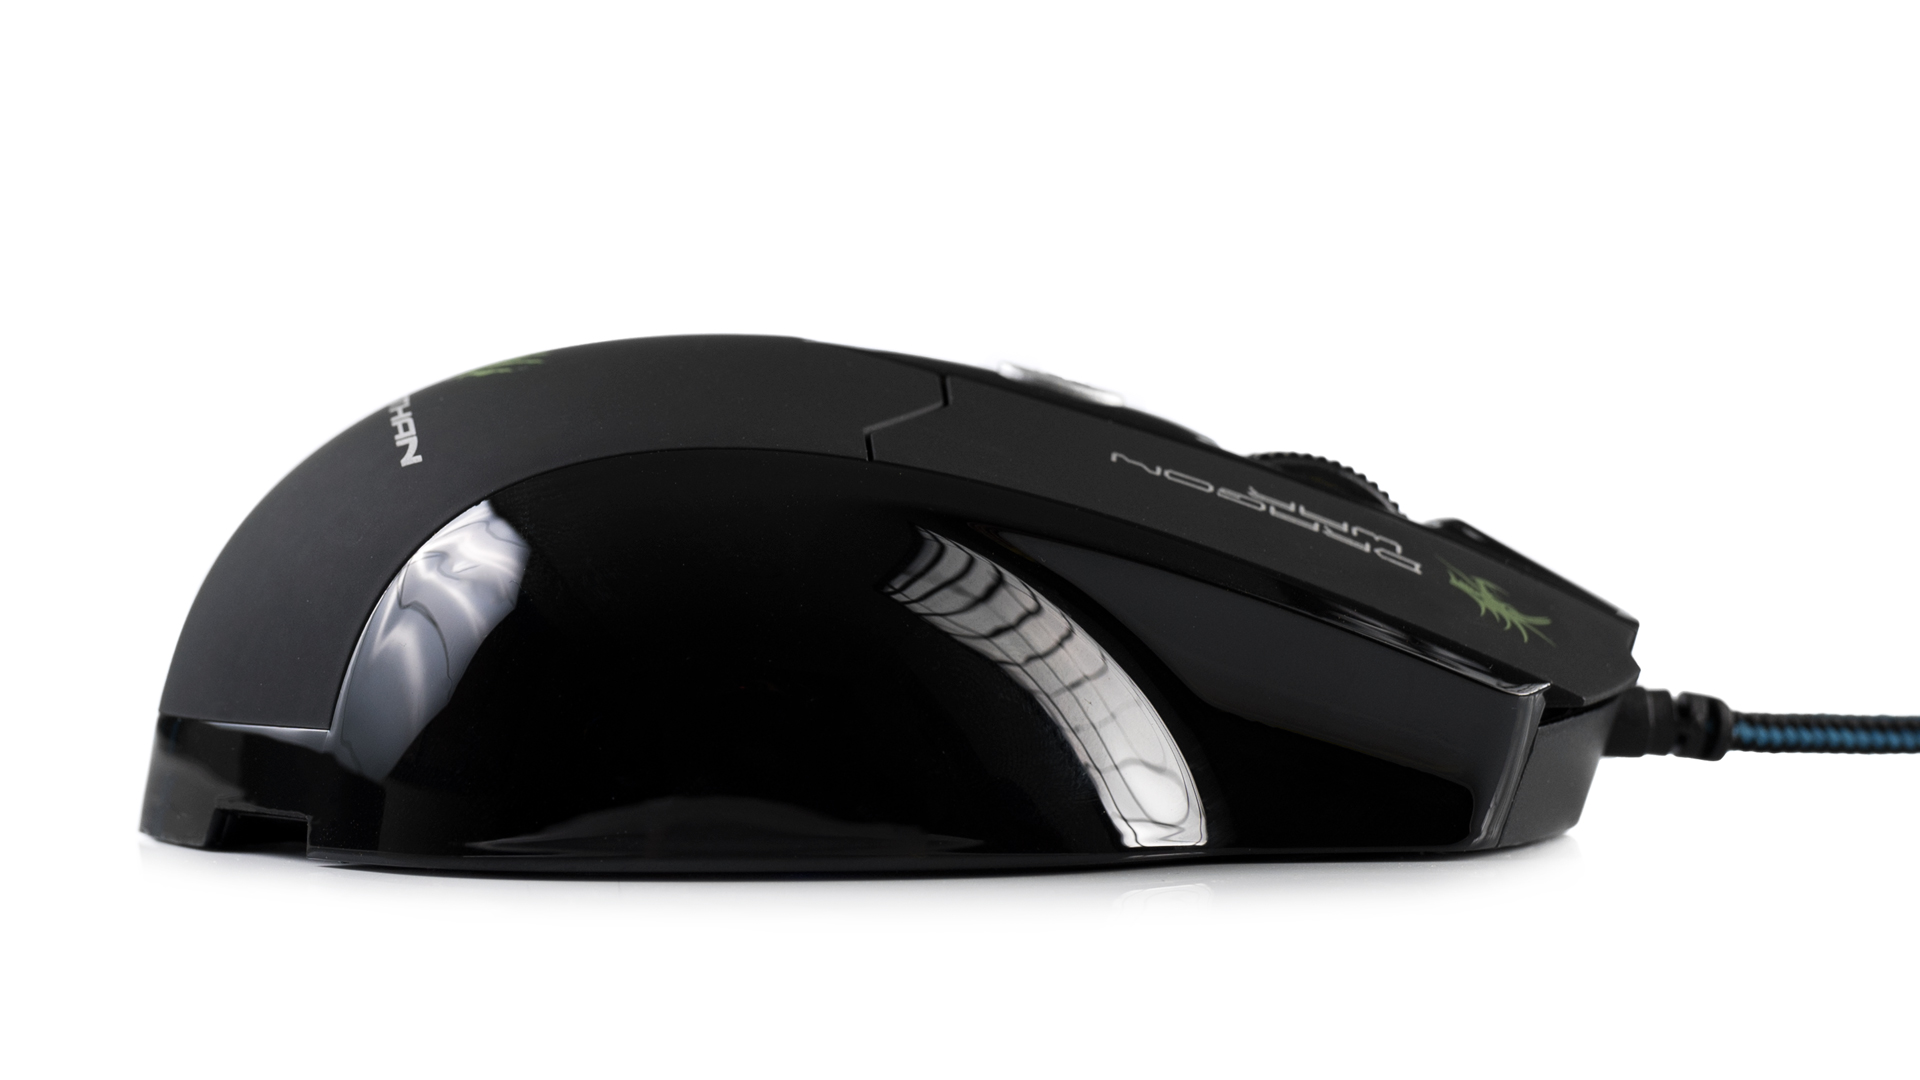 Leviathan 3200dpi Gaming Mouse - foto: 7